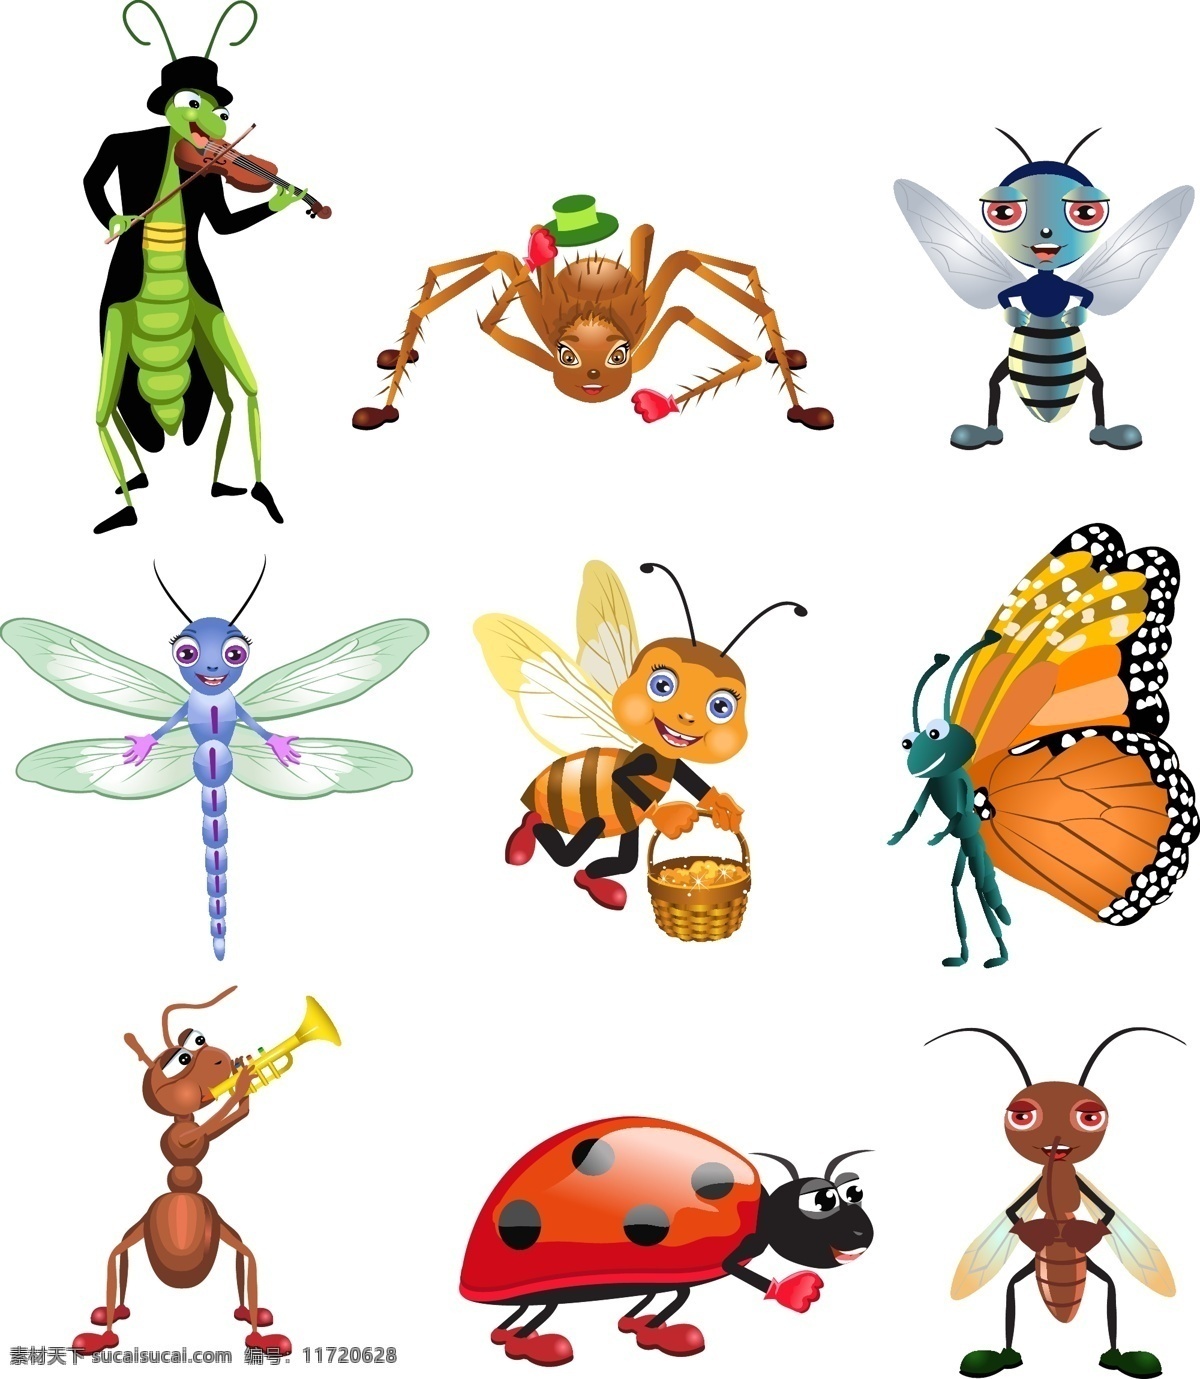 卡通 可爱的 可爱的卡通 昆虫 昆虫很可爱的 媒介 可爱 的卡 通 动物 昆虫卡通可爱 免费 矢量 矢量图 其他矢量图